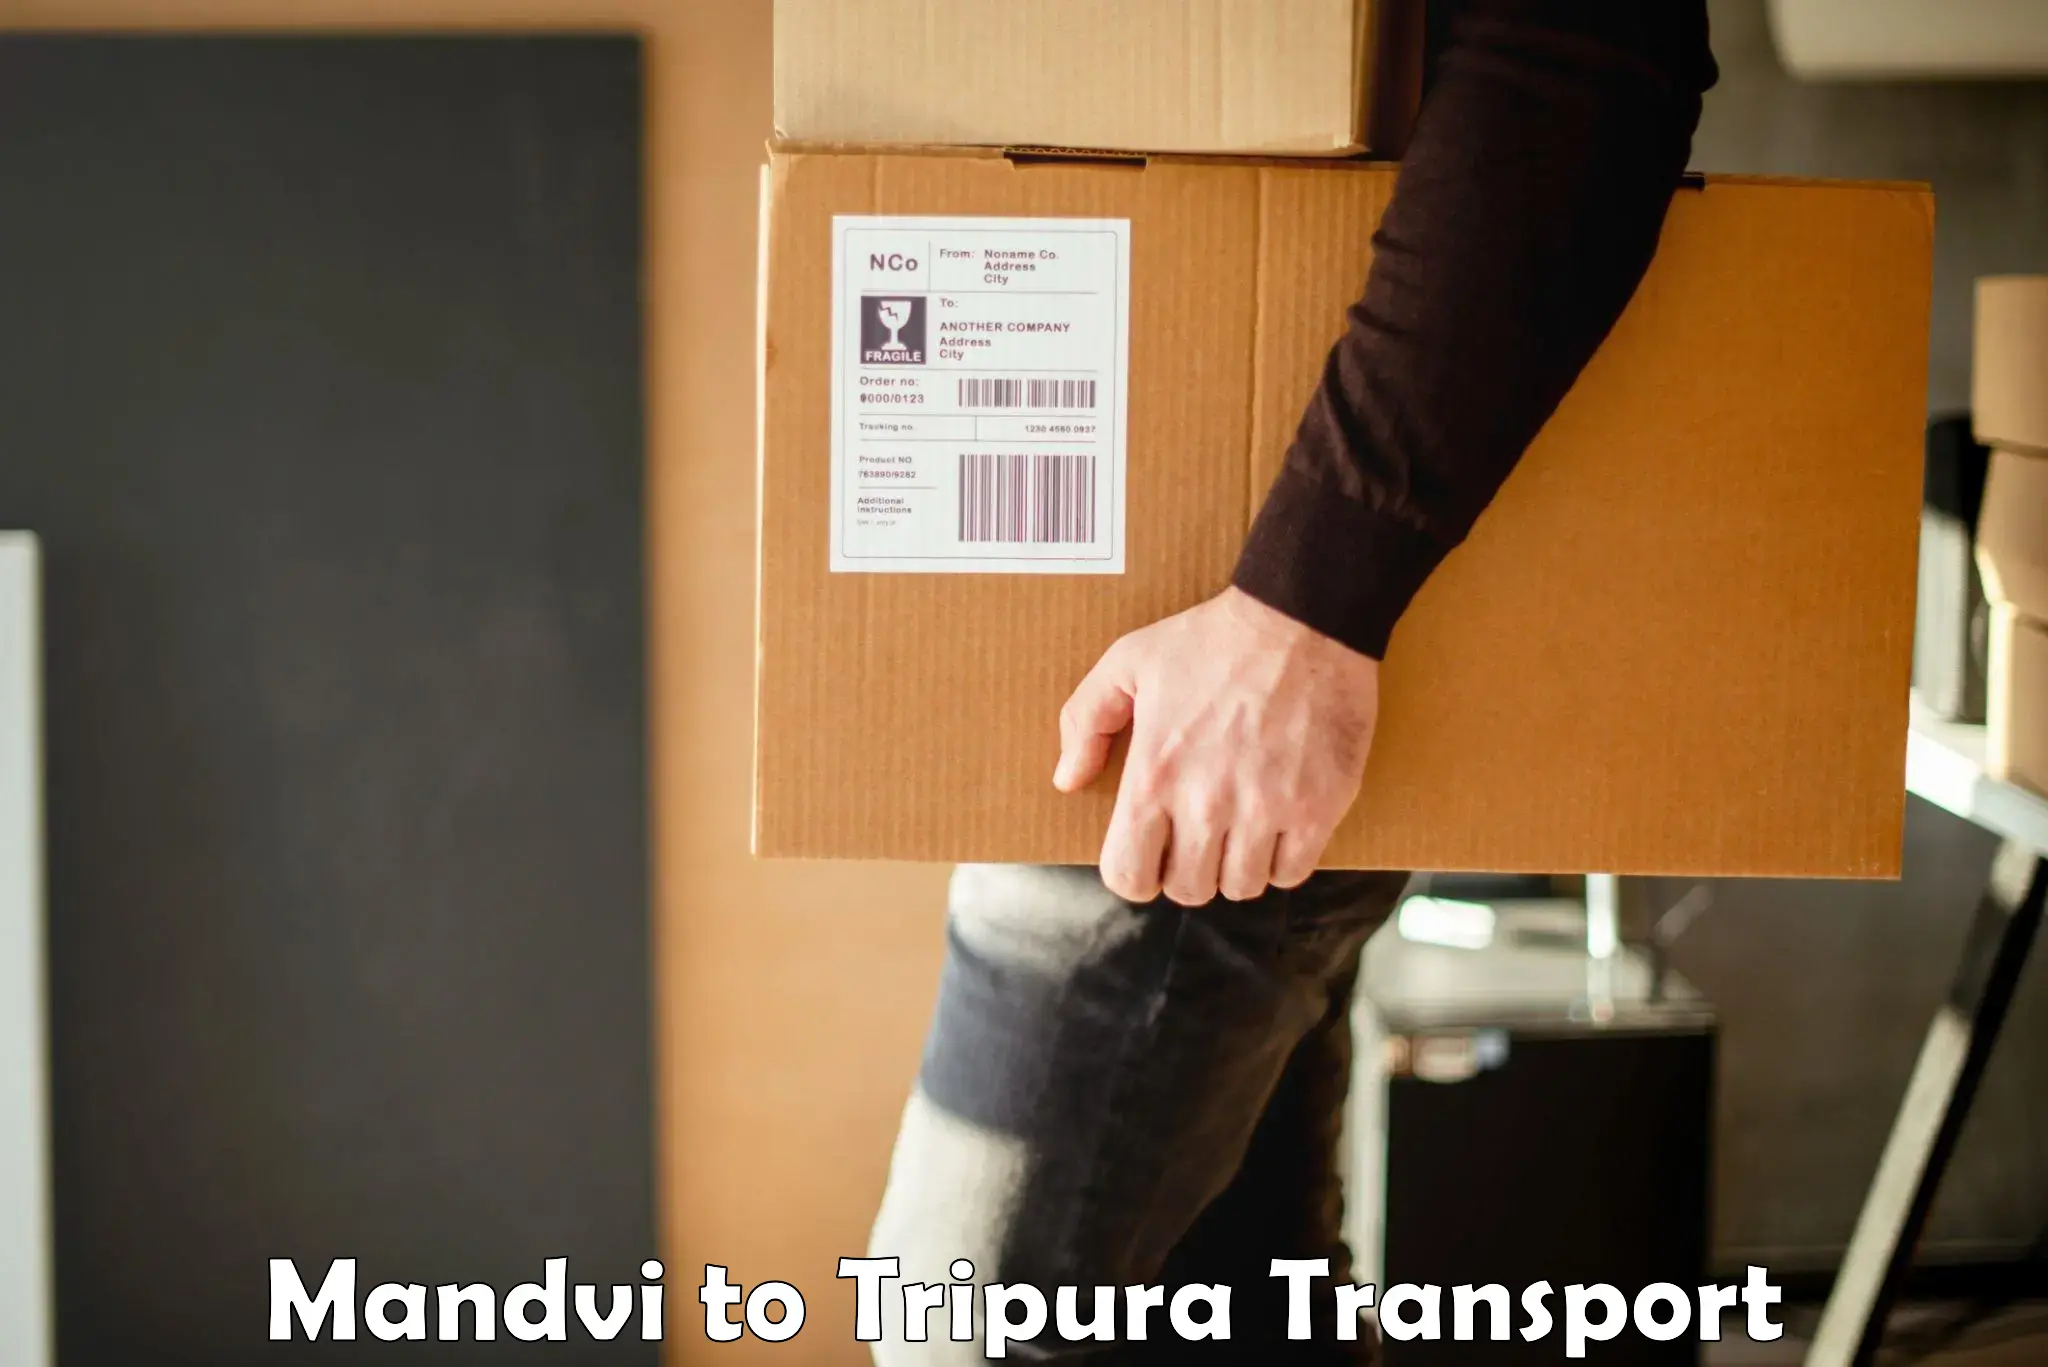 Air cargo transport services Mandvi to Udaipur Tripura